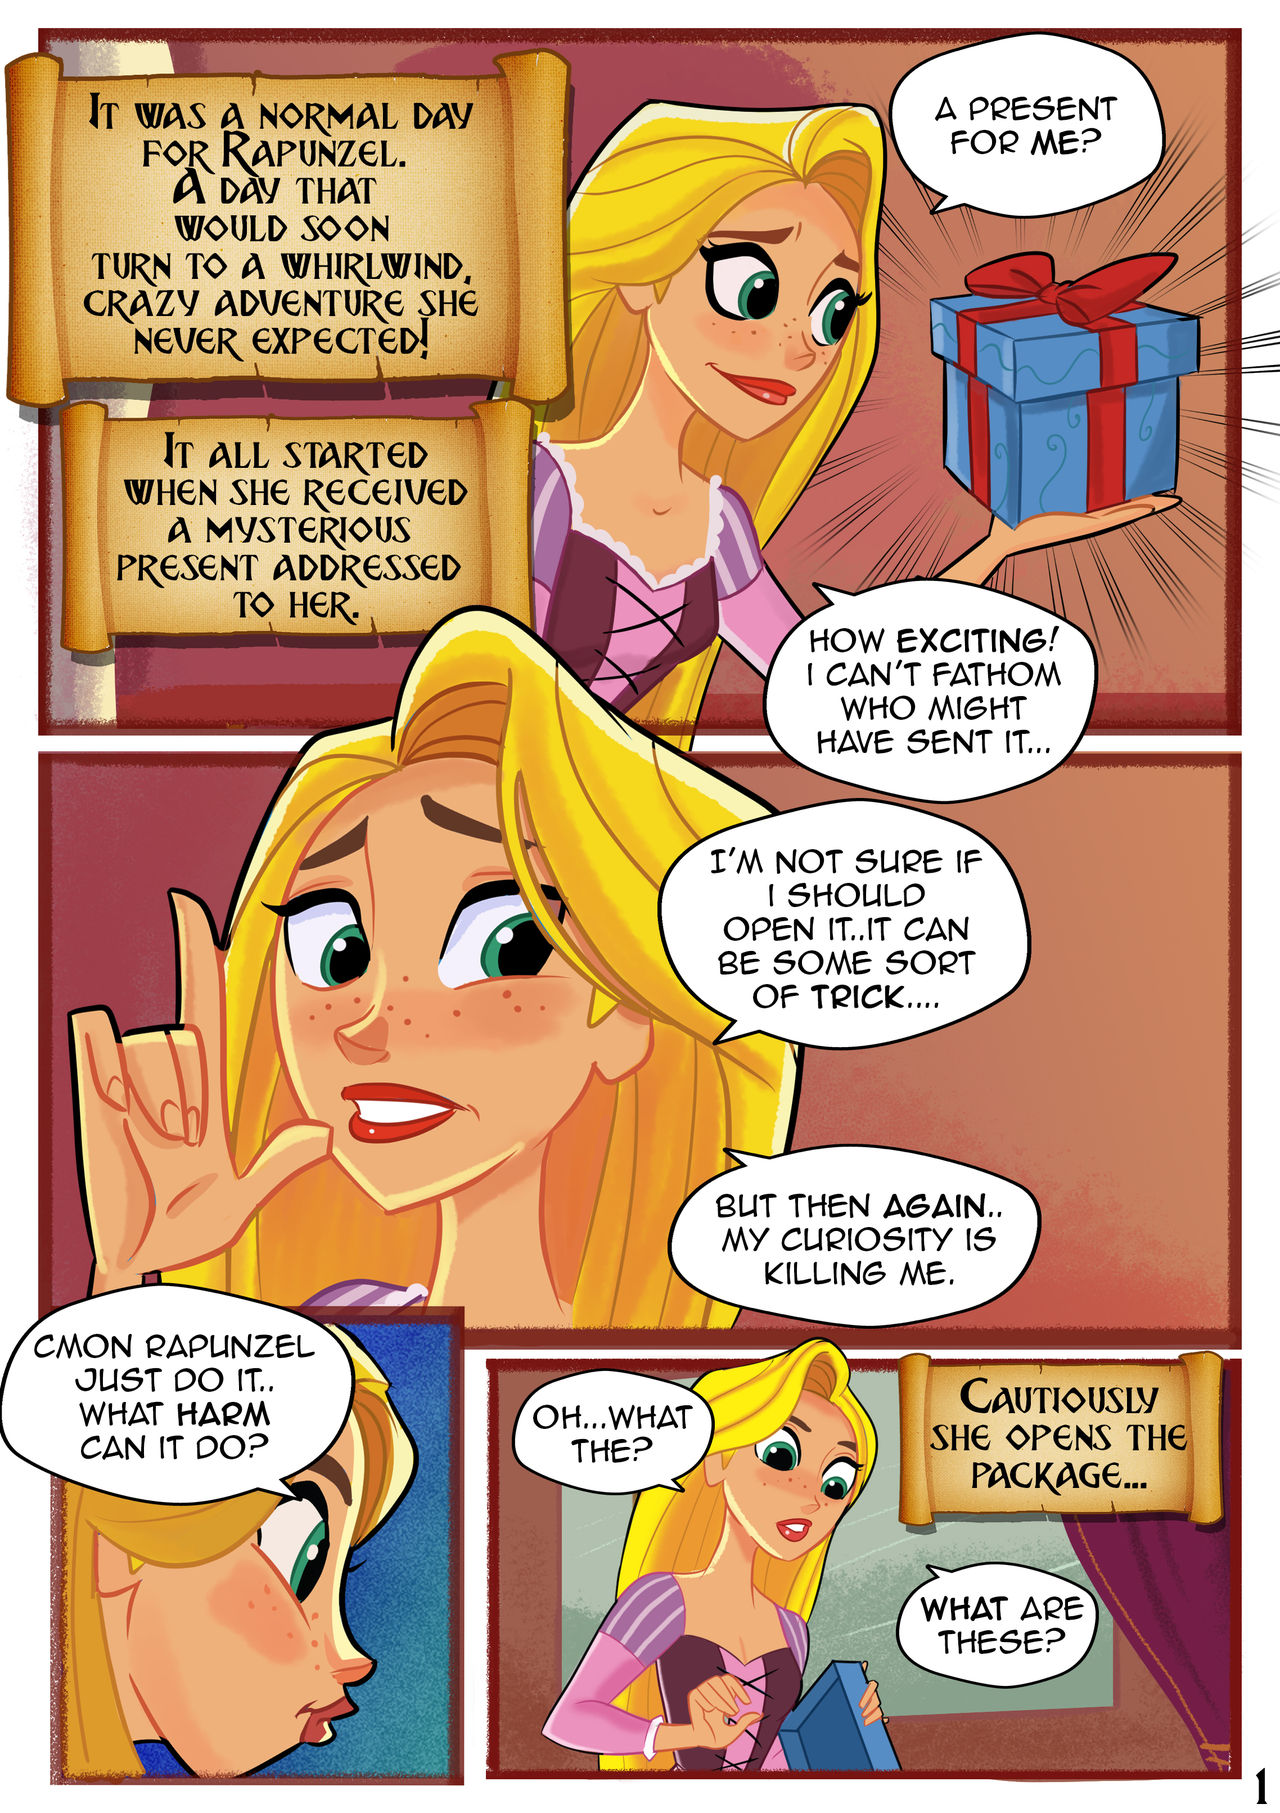 Rapunzel - Disney Rapunzel Porn Comics | Sex Pictures Pass